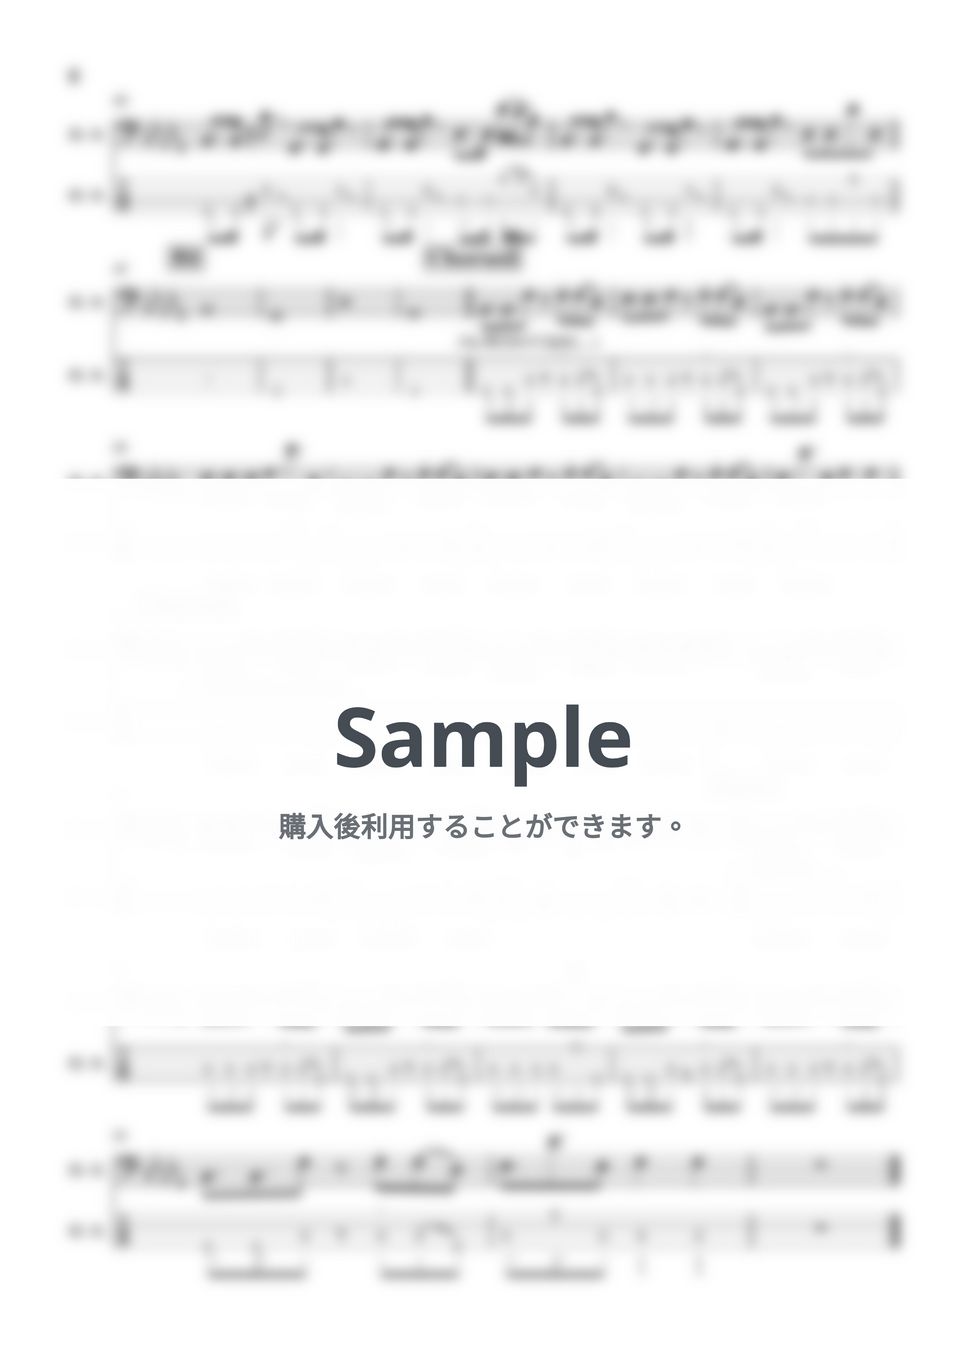 音田雅則 - fake face dance music (ベース/音田雅則) by TARUO's_Bass_Score